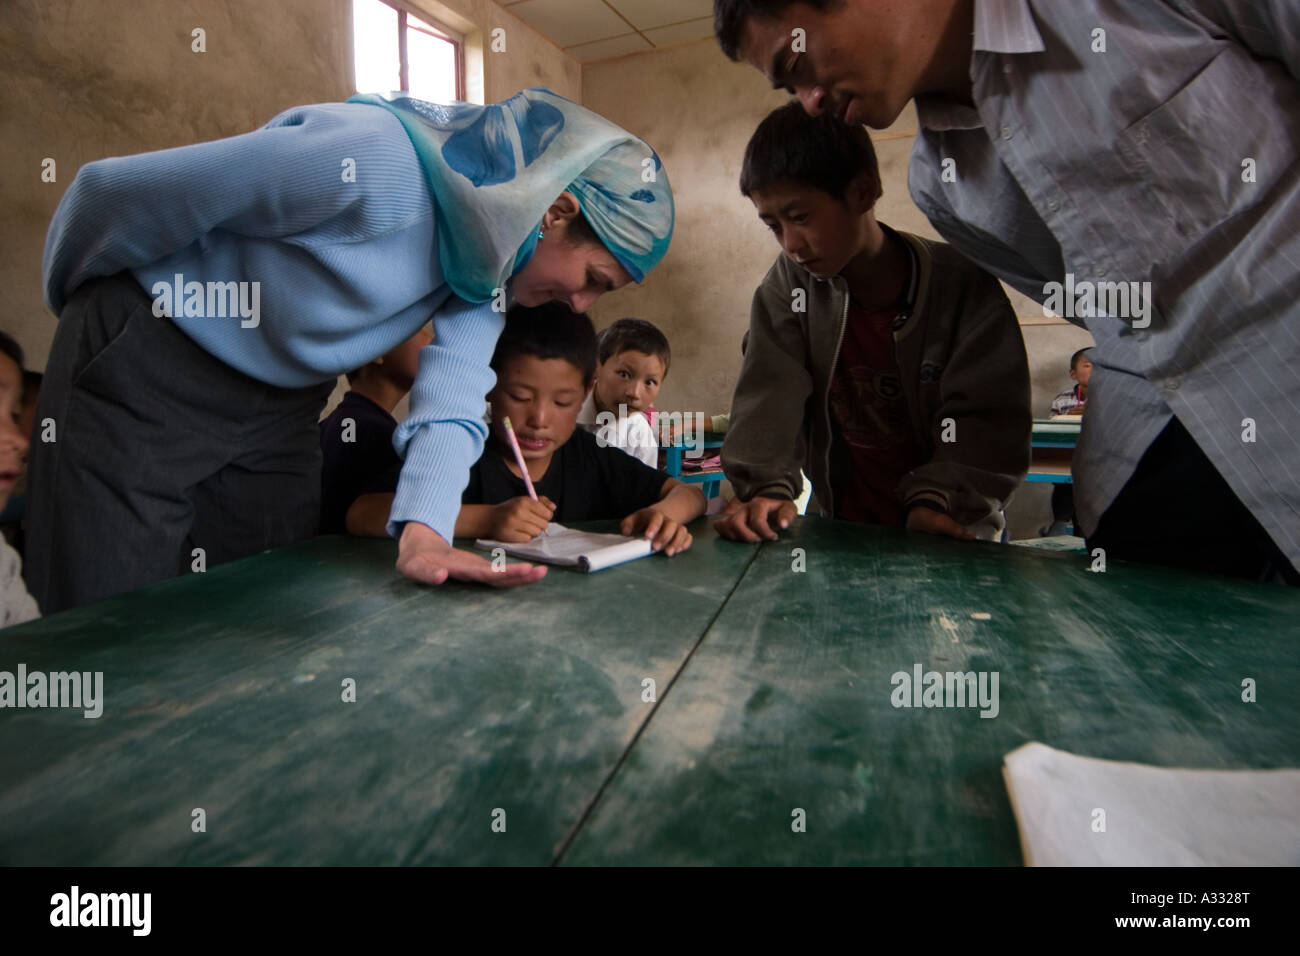 David Deemss Frau spricht mit den lokalen Schülerinnen und Schüler in Chinesisch. Stockfoto